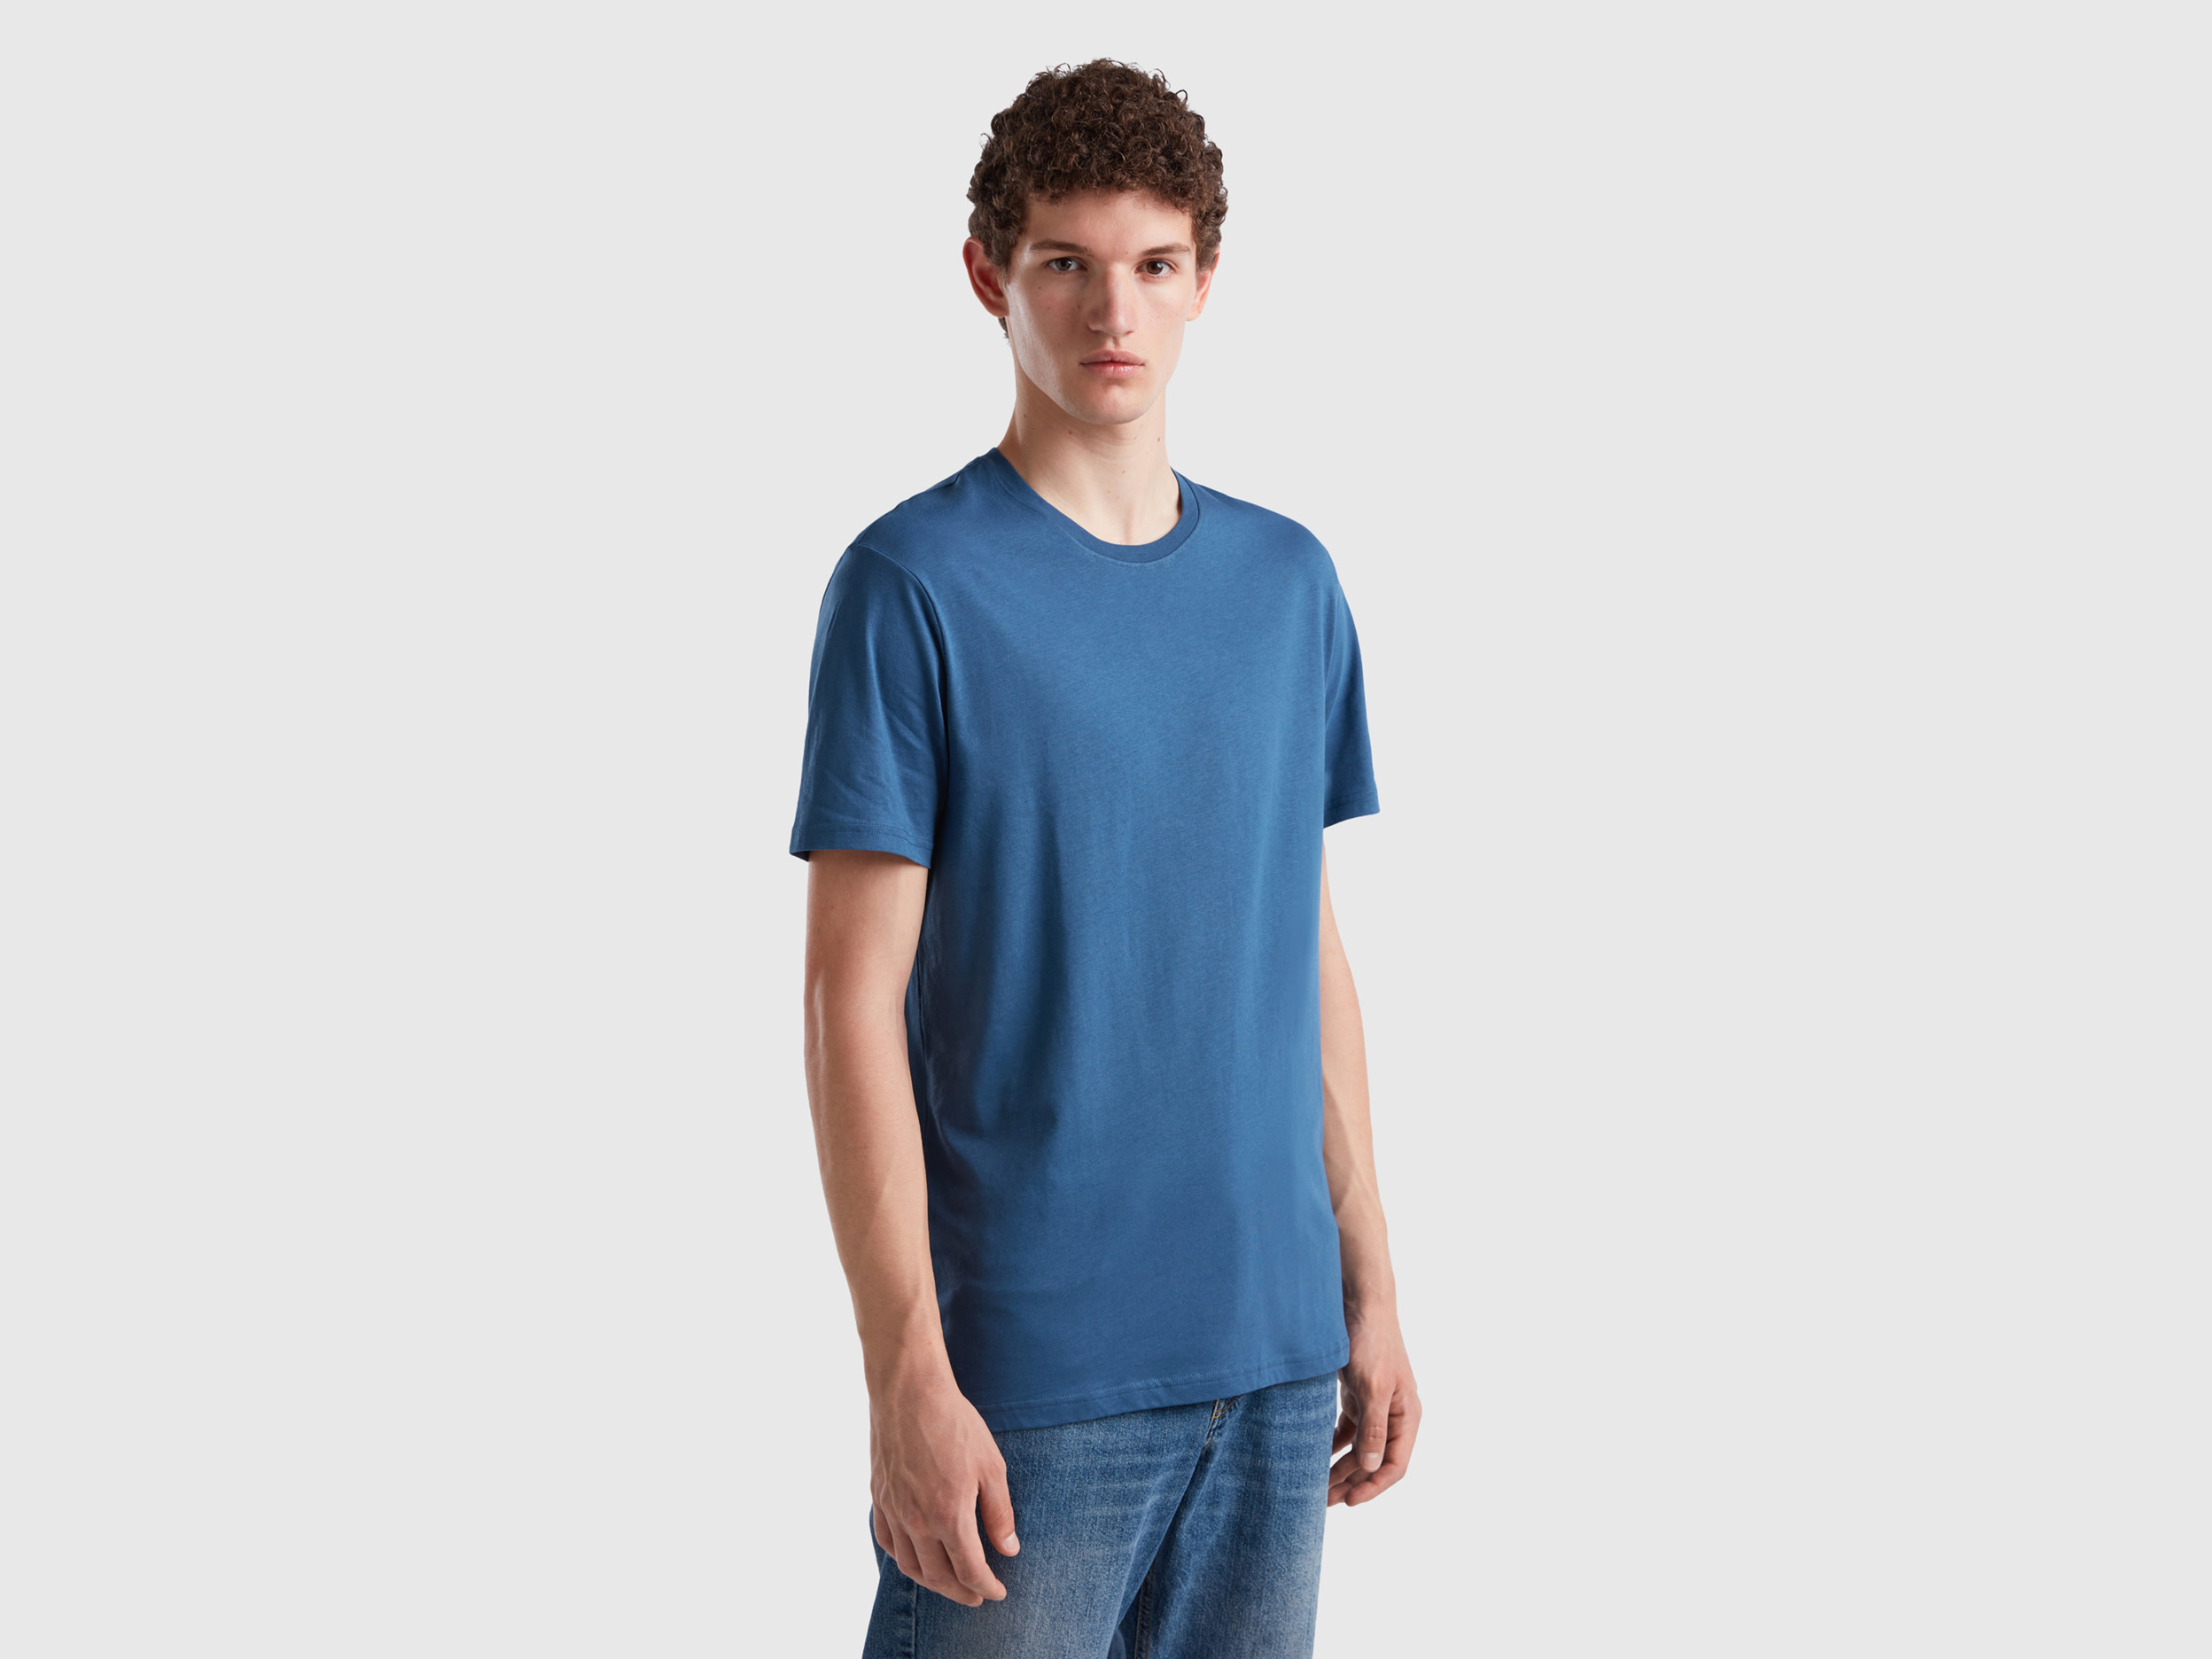 Benetton, Air Force Blue T-shirt, size XL, Air Force Blue, Men